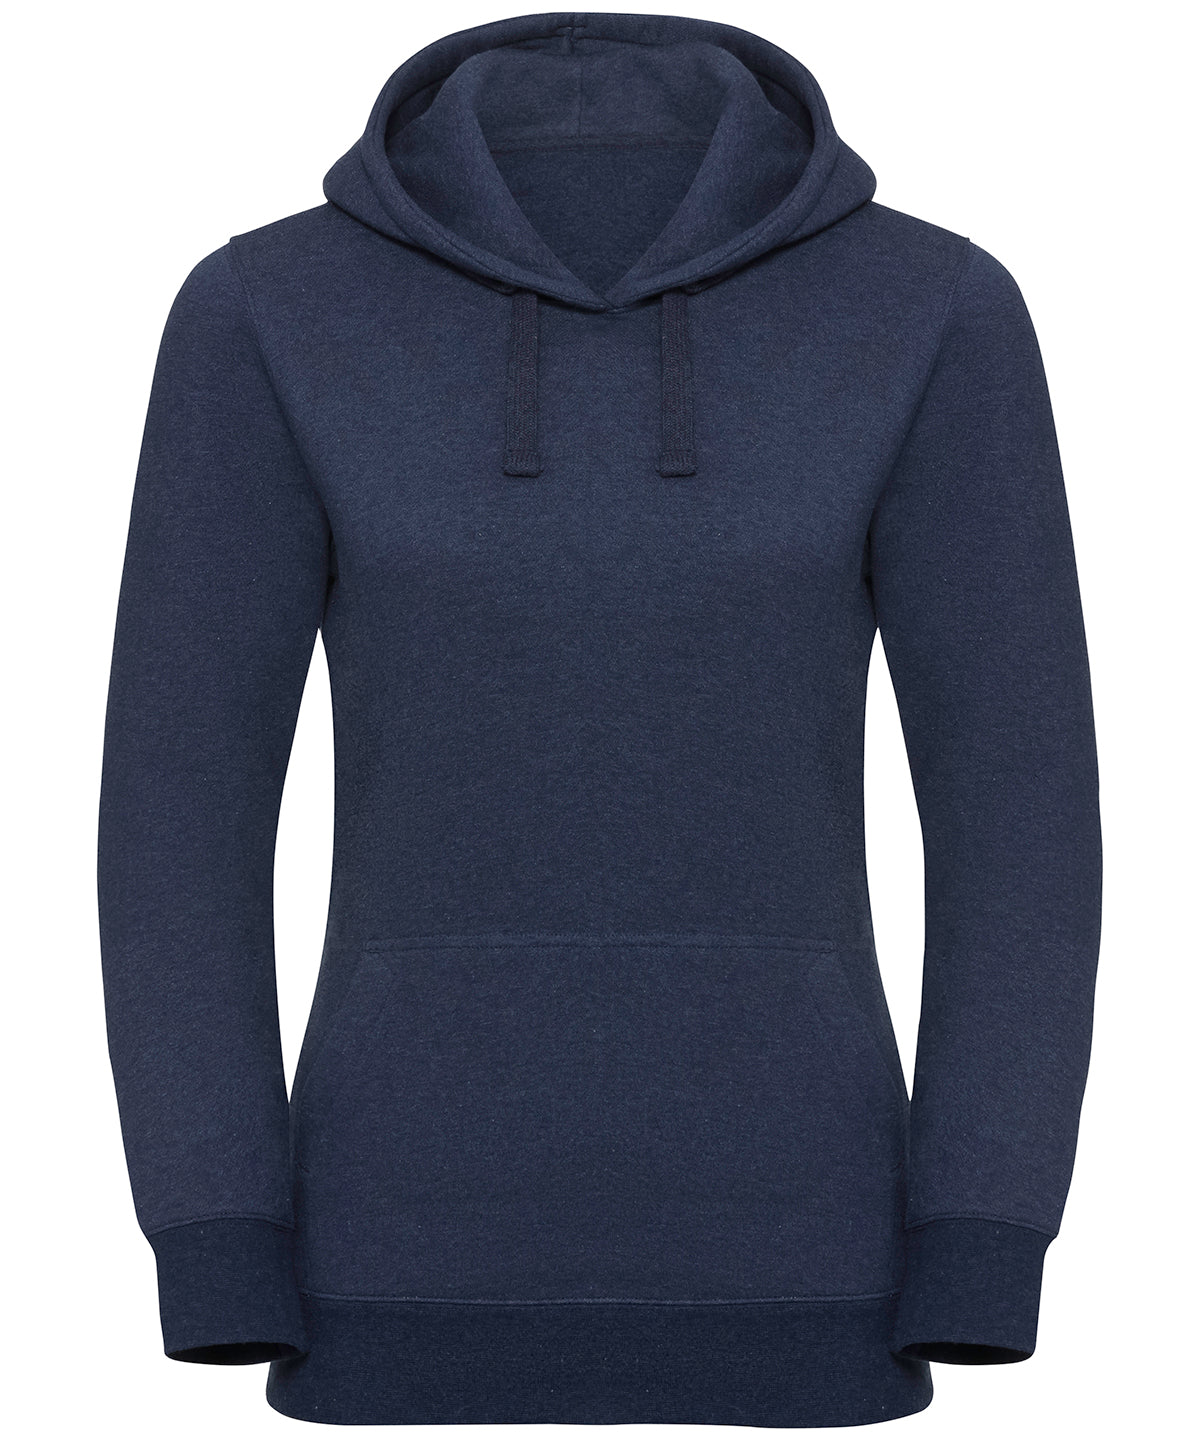 Women's authentic melange hooded sweatshirt